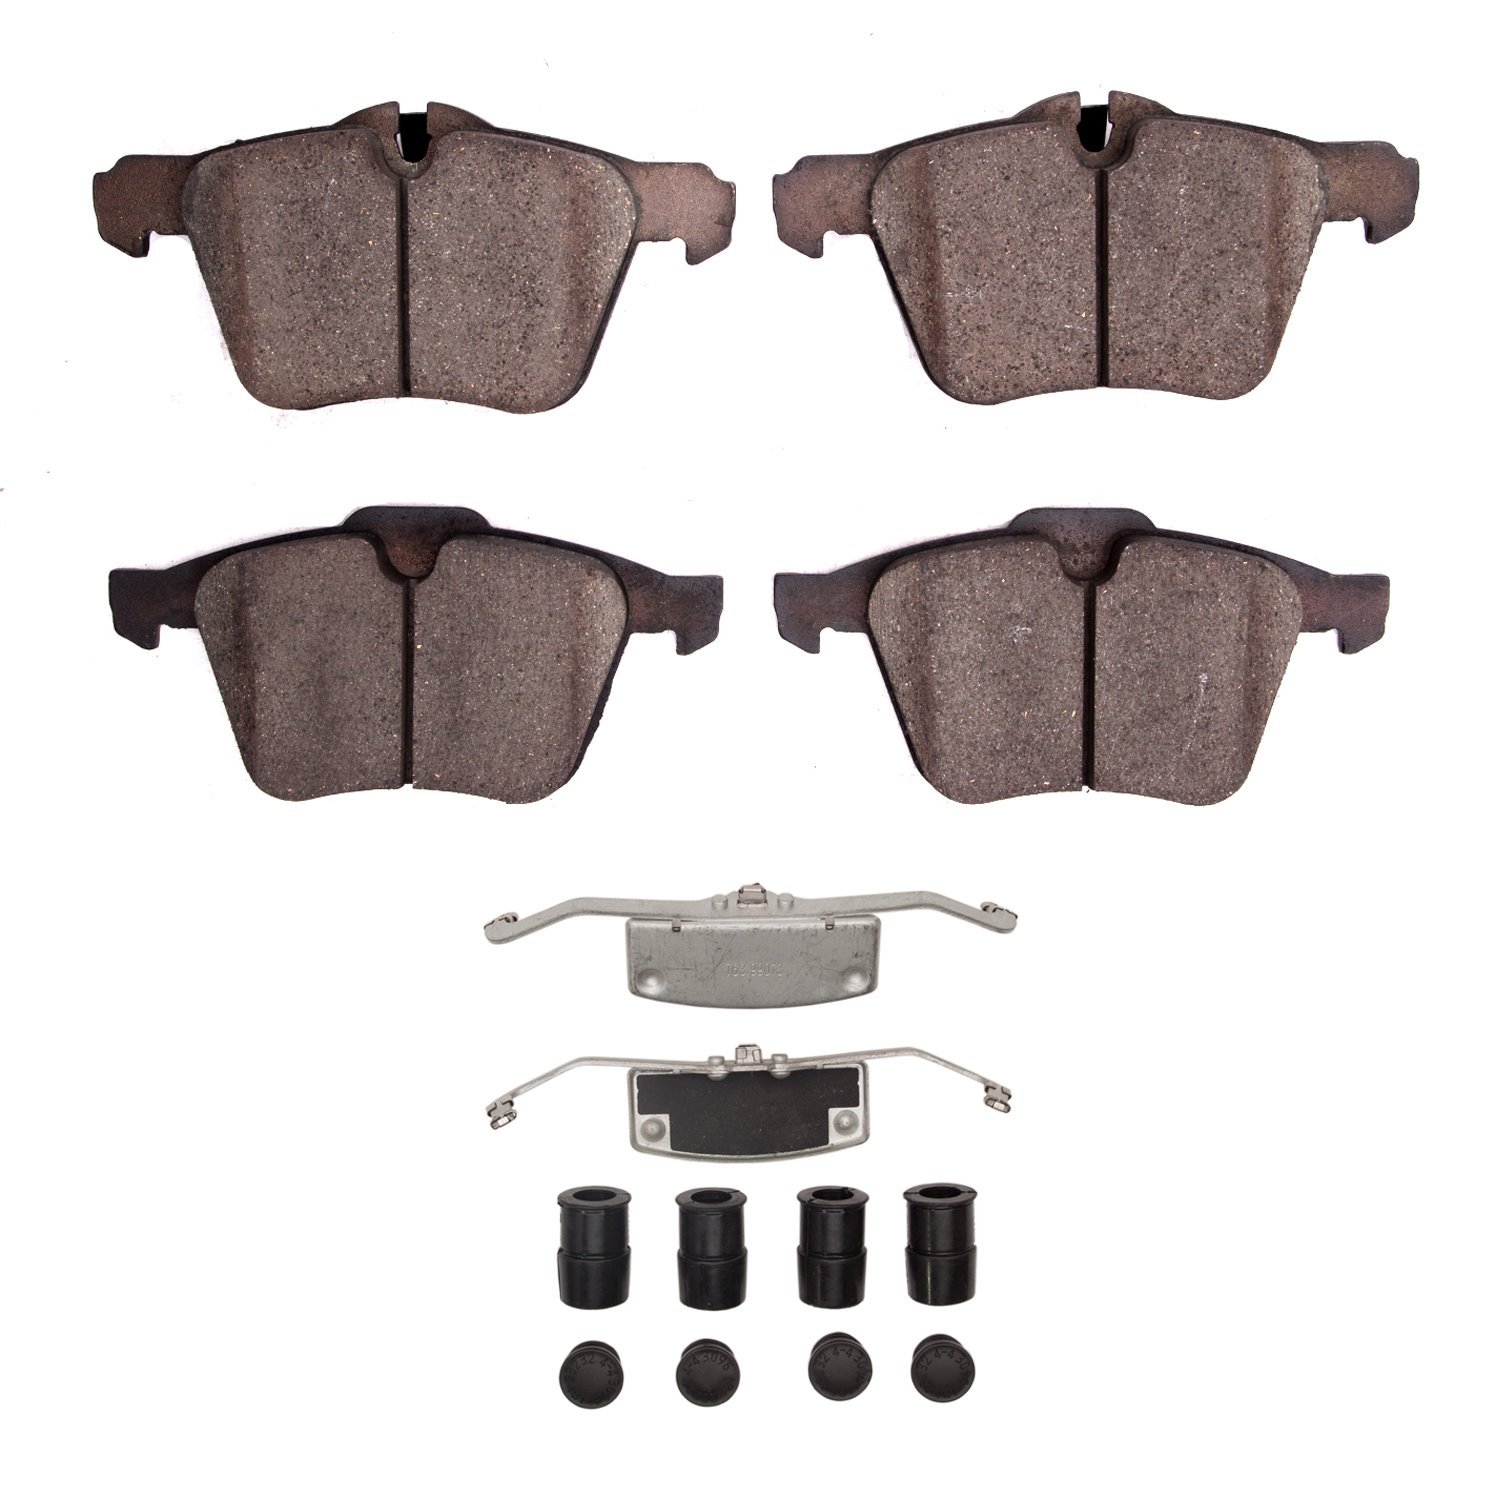 1551-1751-01 5000 Advanced Low-Metallic Brake Pads & Hardware Kit, 2014-2021 Jaguar, Position: Front